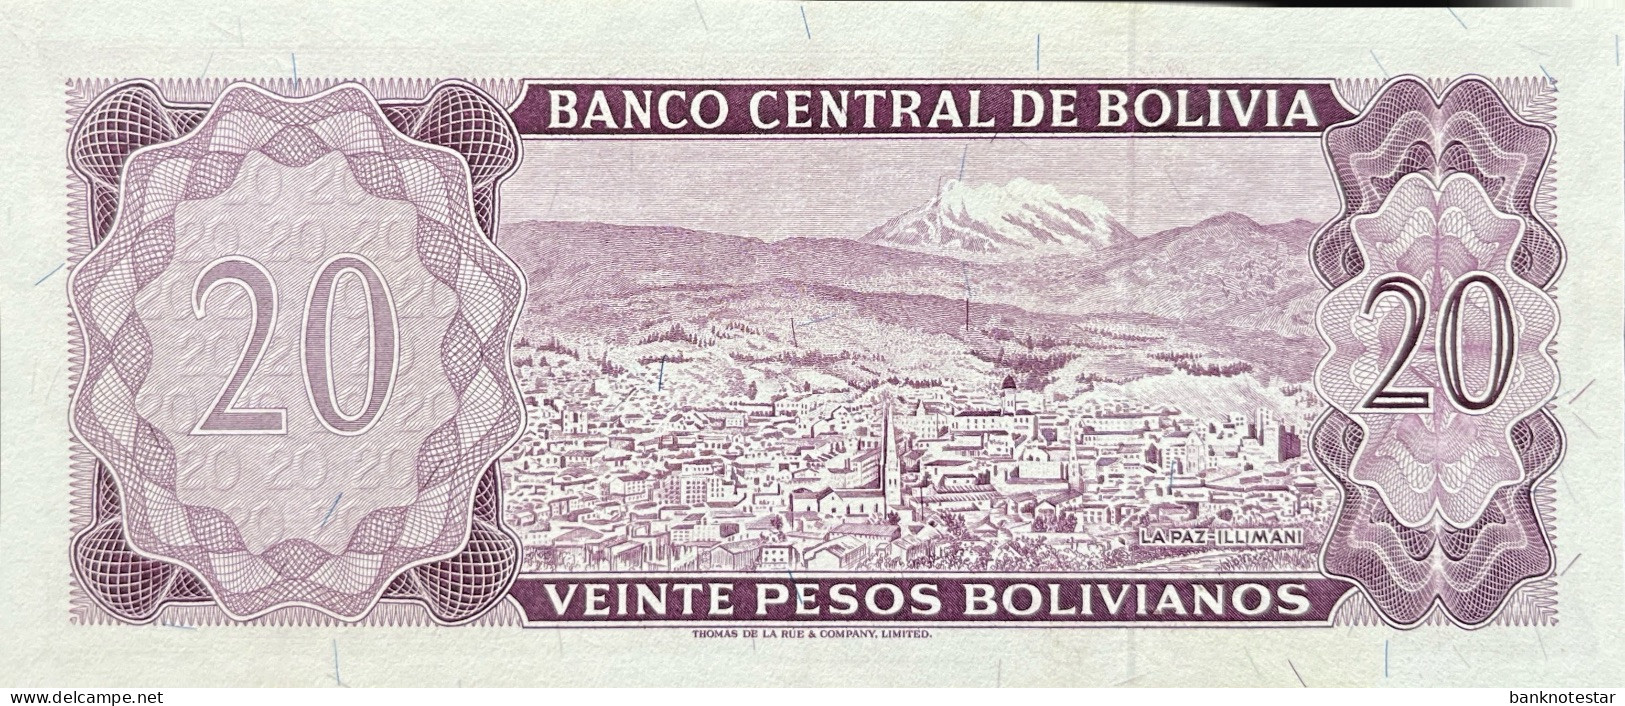 Bolivia 20 Pesos Bolivianos, P-161 (L.1962) - UNC - RARE - Bolivia